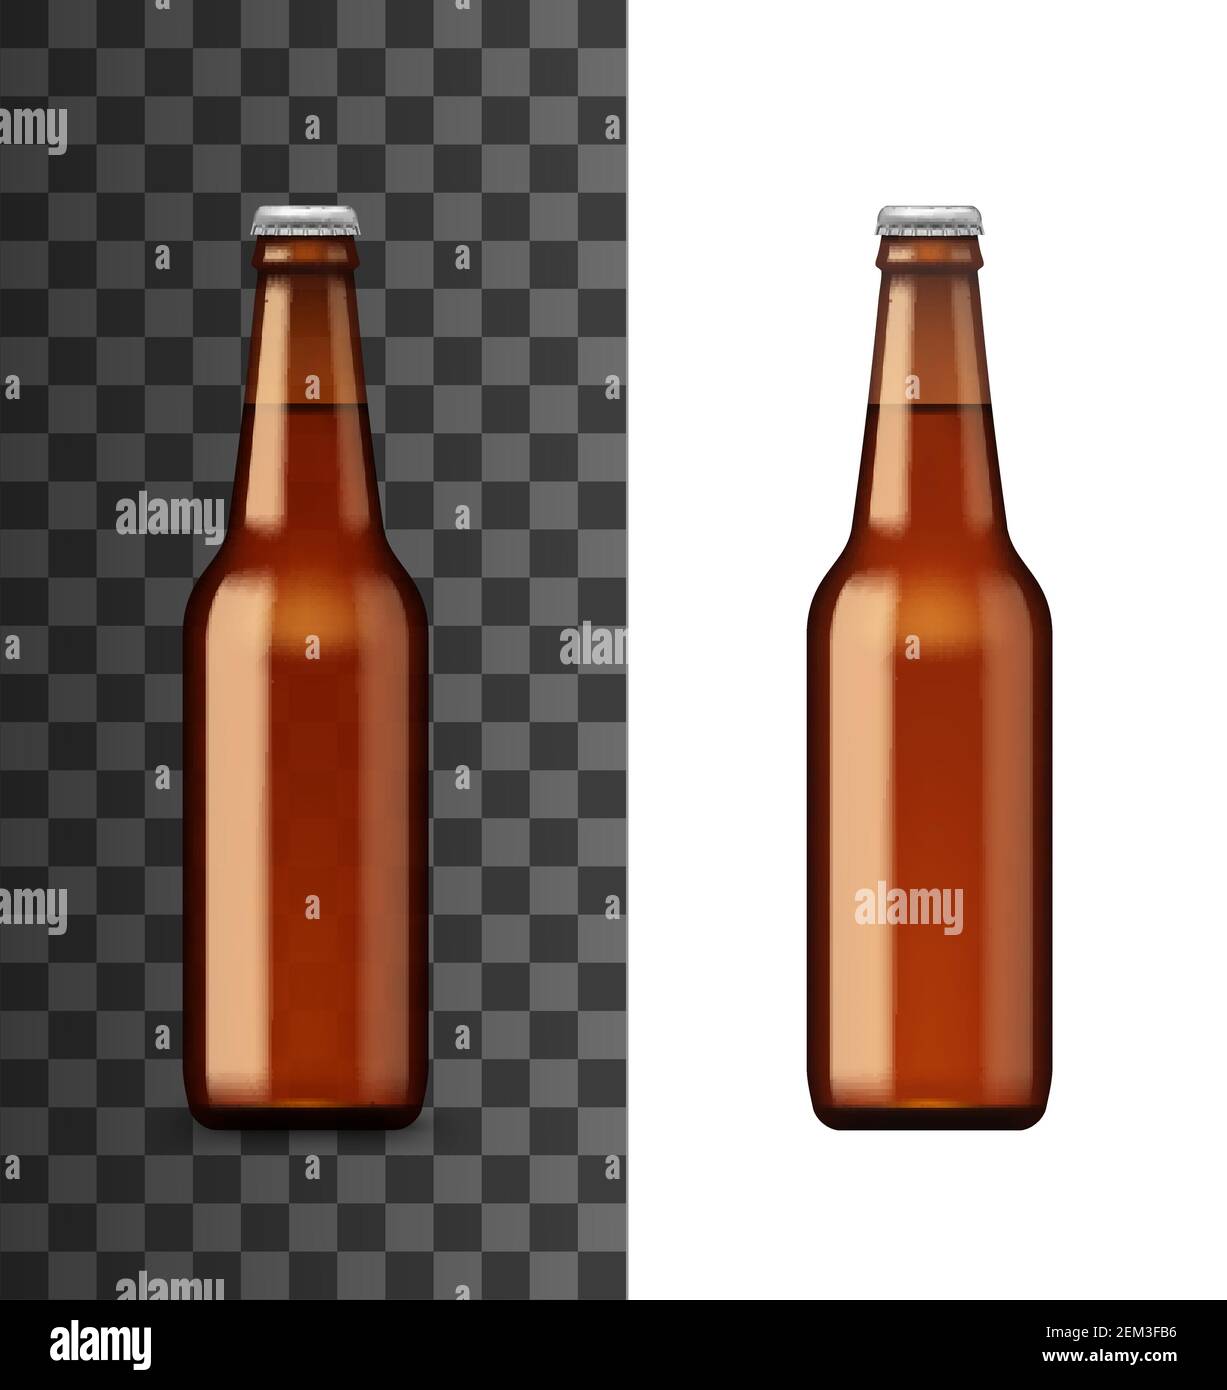 Bierflasche Mockup Schablone, realistisches 3D Alkoholtrinkglas. Vector  isolierte blank braune Flasche mit geschlossenem Deckel, Irish Ale oder  Craft Lagerbier, Alco Stock-Vektorgrafik - Alamy